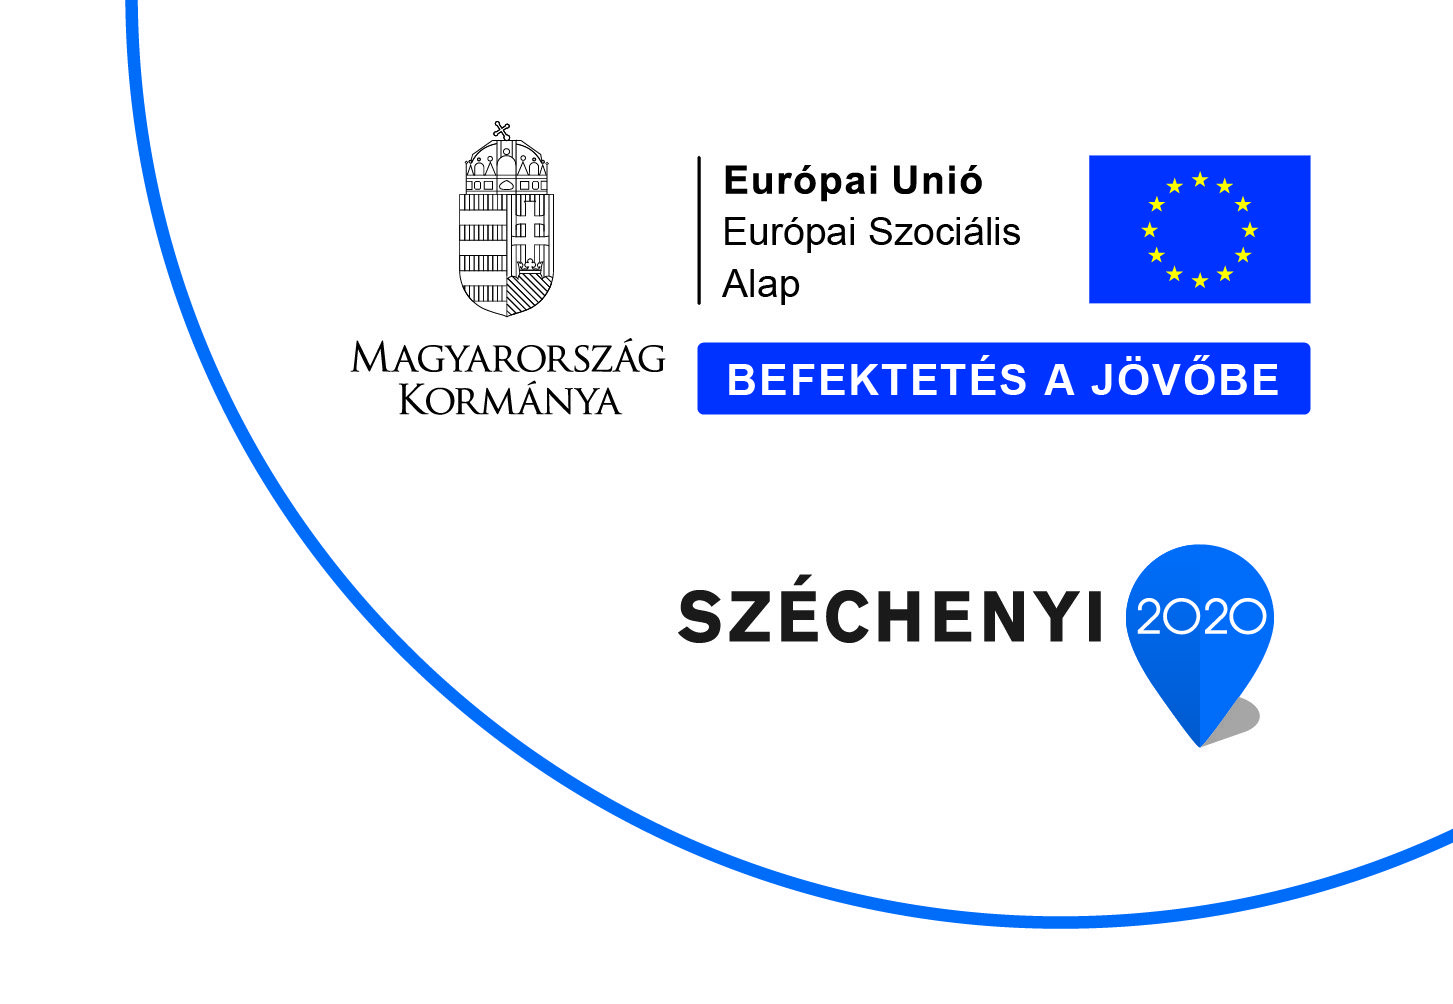 Európai Unió Európai Szociális alap. Befektetés a jövőbe. Széchenyi 2020